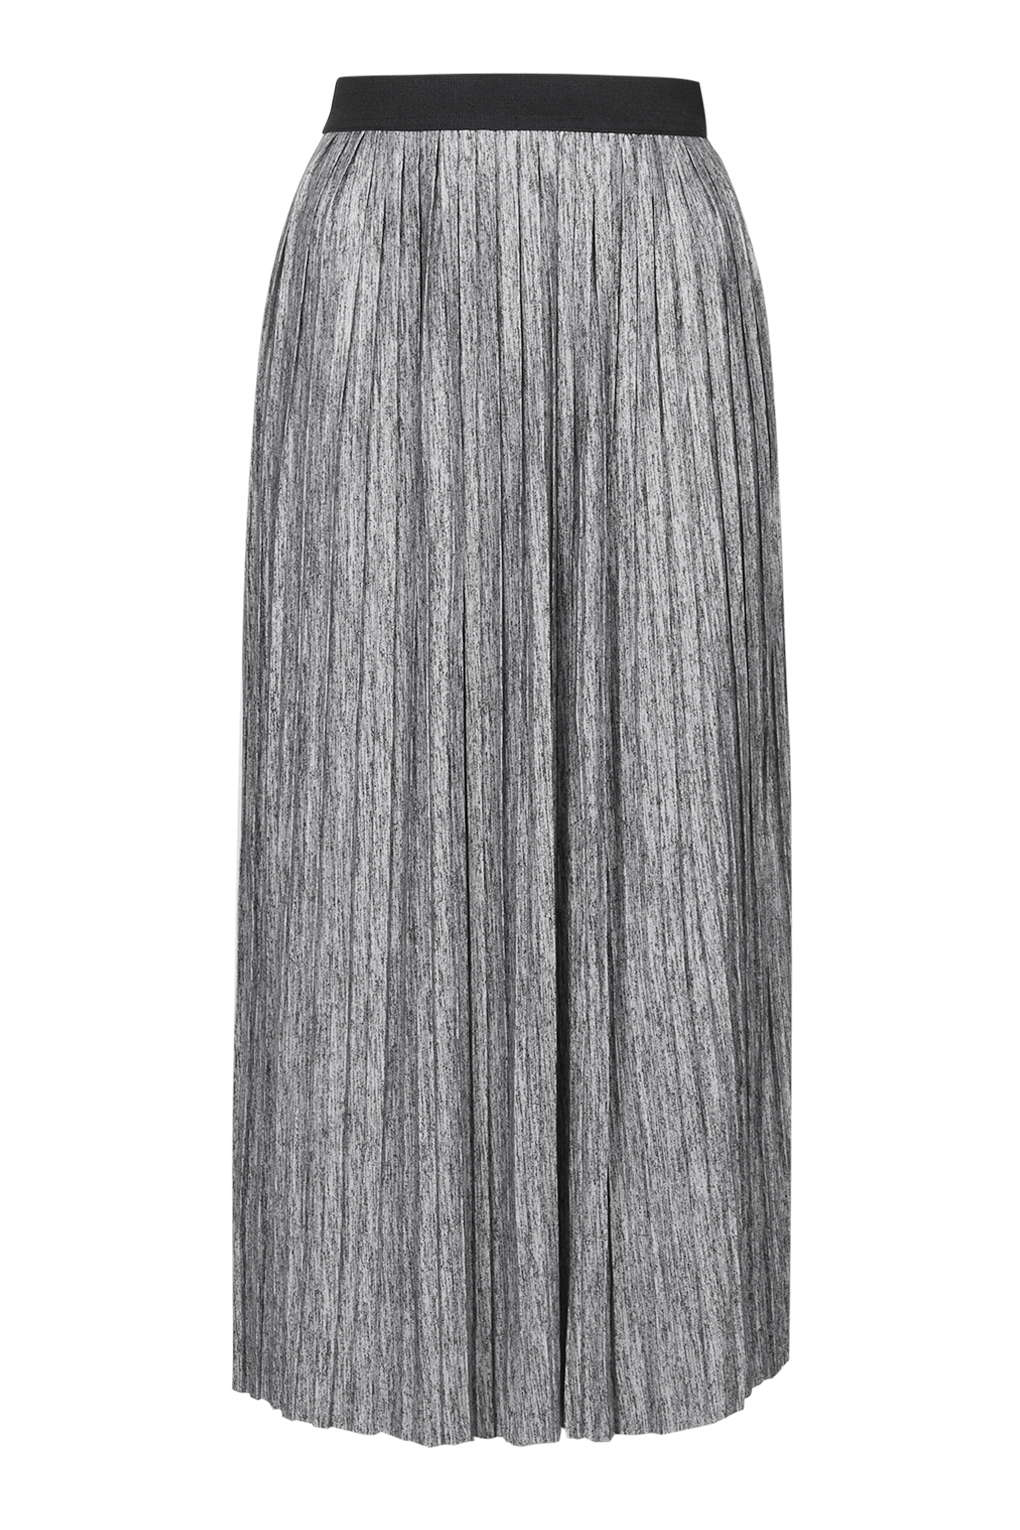 Lyst - Topshop Marl Pleat Midi Skirt in Gray